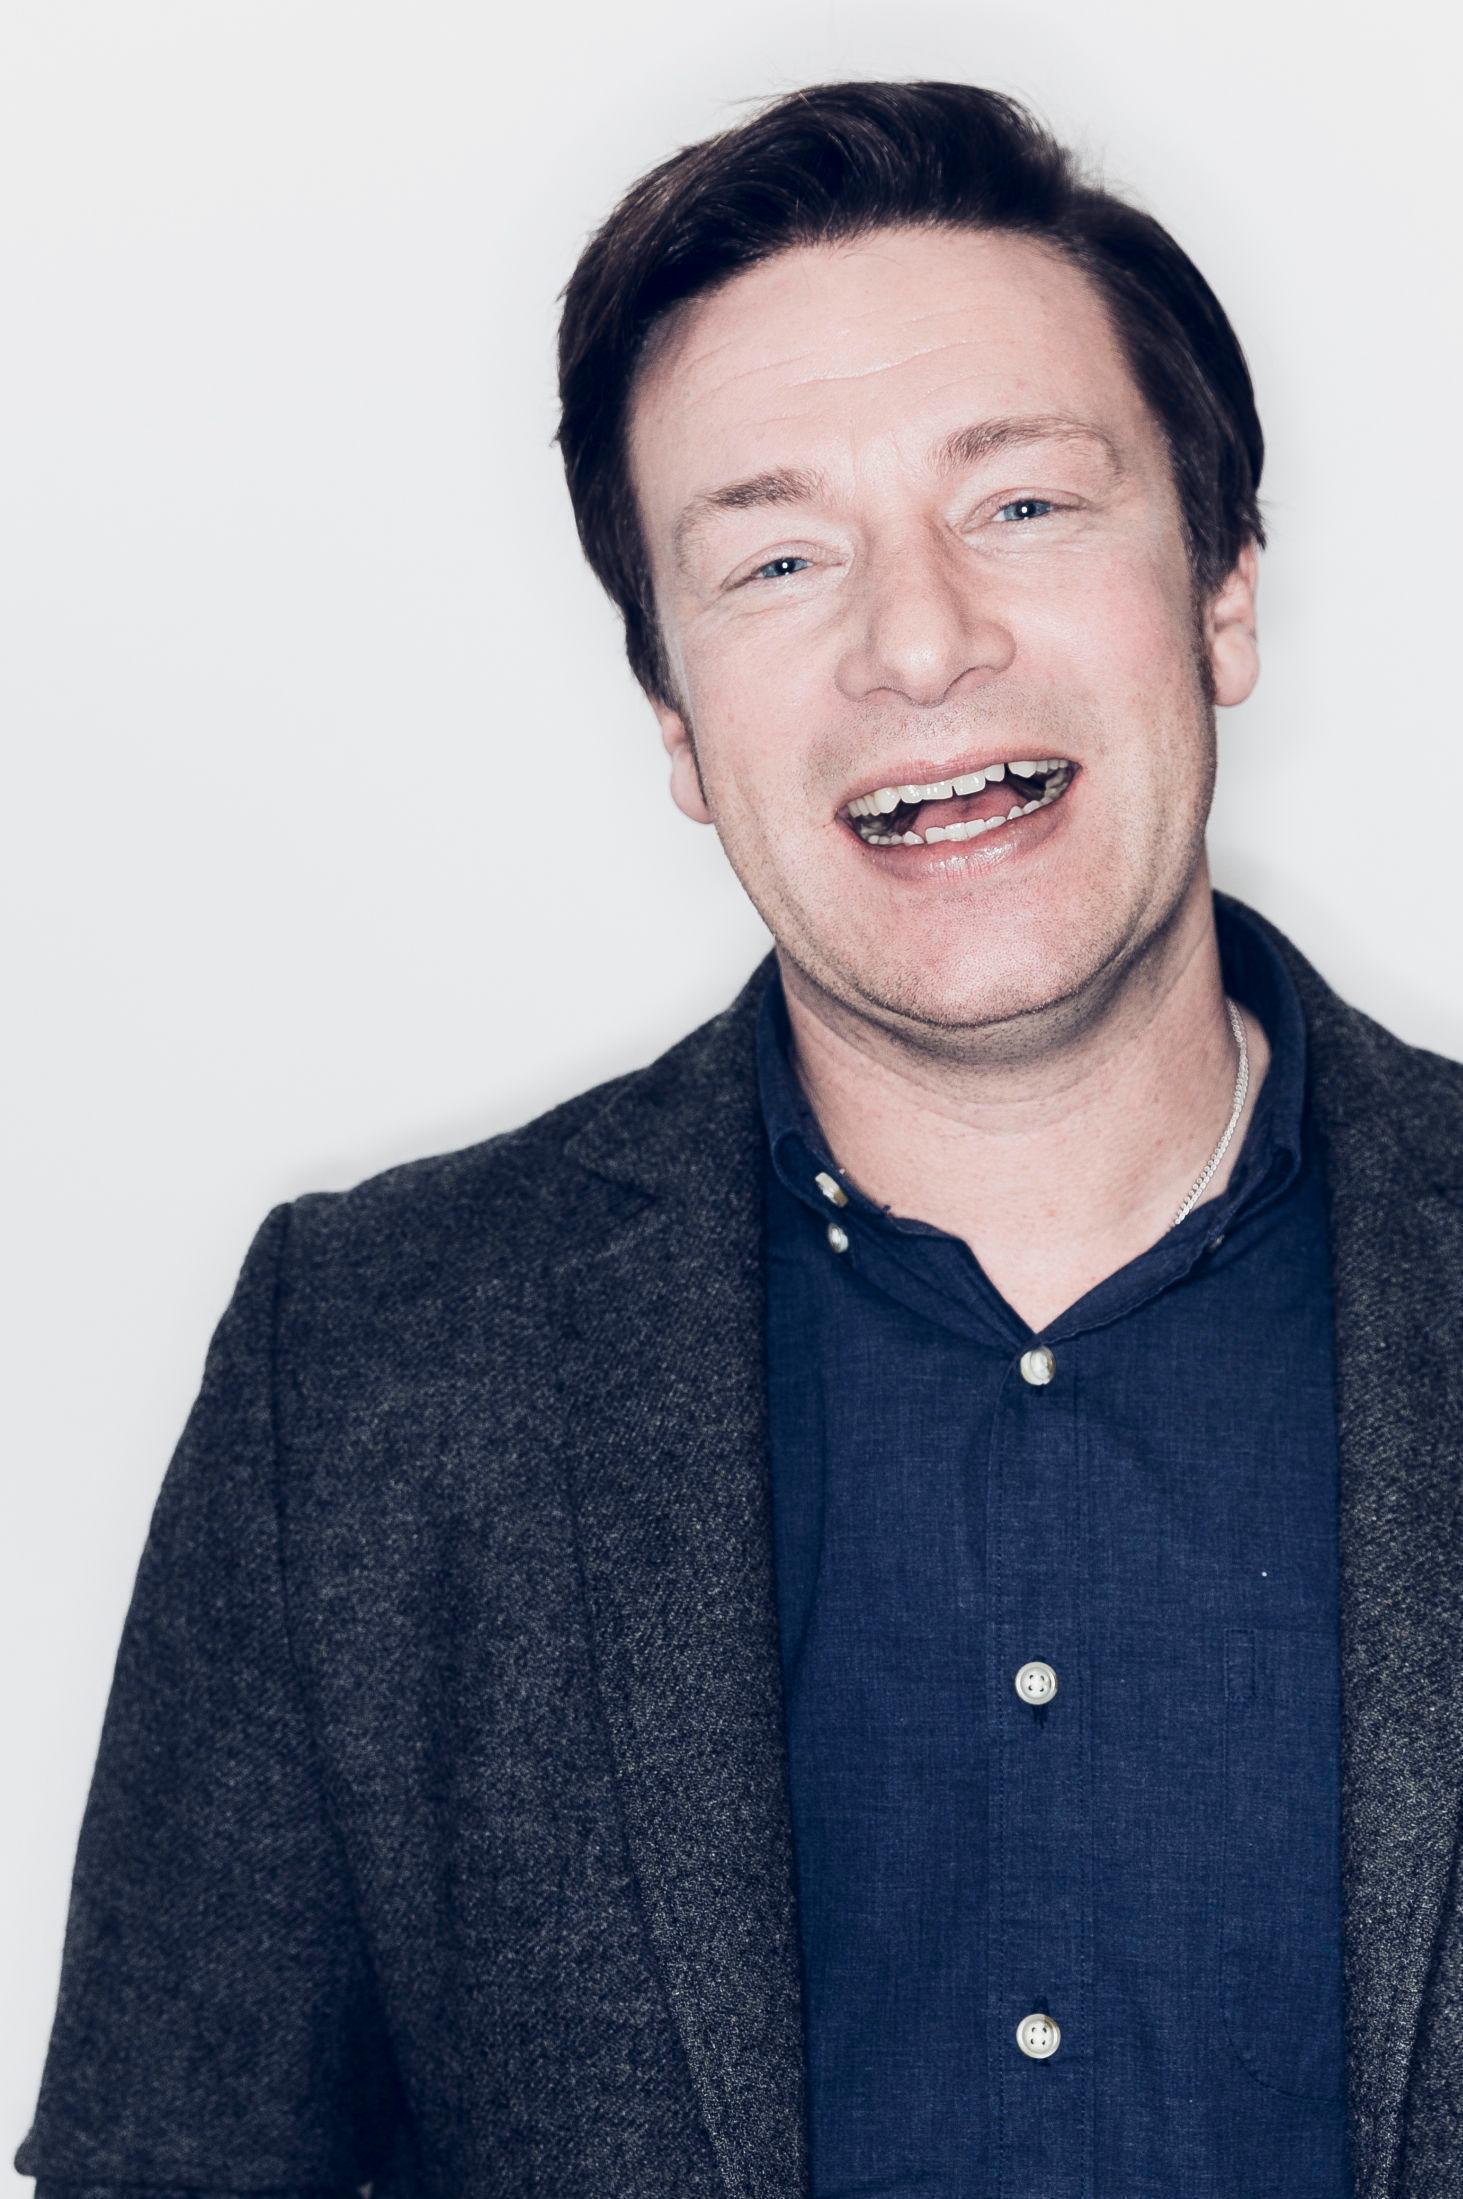 FAMILIE: Jamie Oliver trekker fram venner, familie og kona og sier han har veldig heldig som har dem. Foto: Krister Sørbø/VG